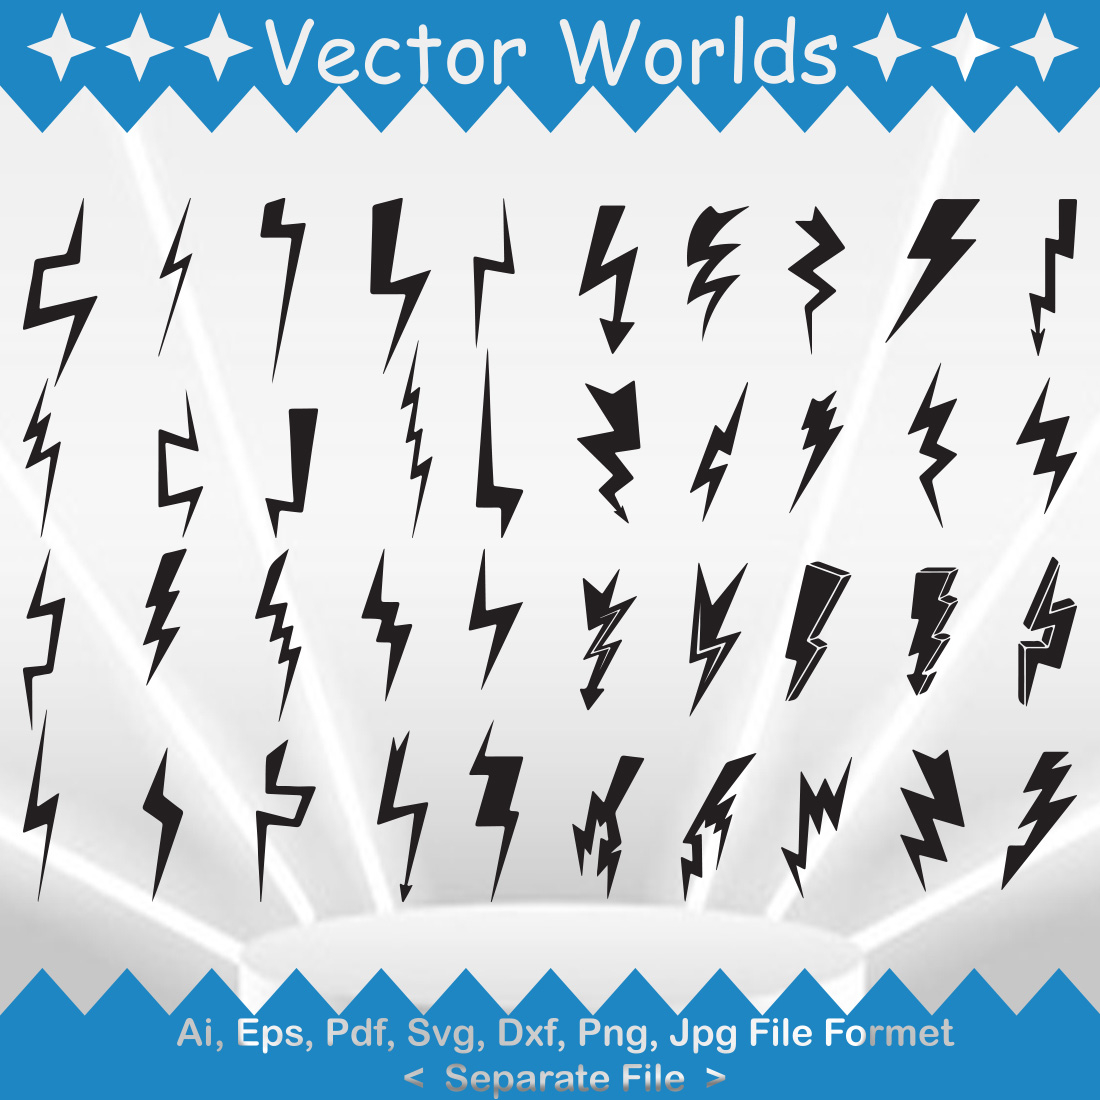 Lightning Bolt SVG Vector Design preview image.